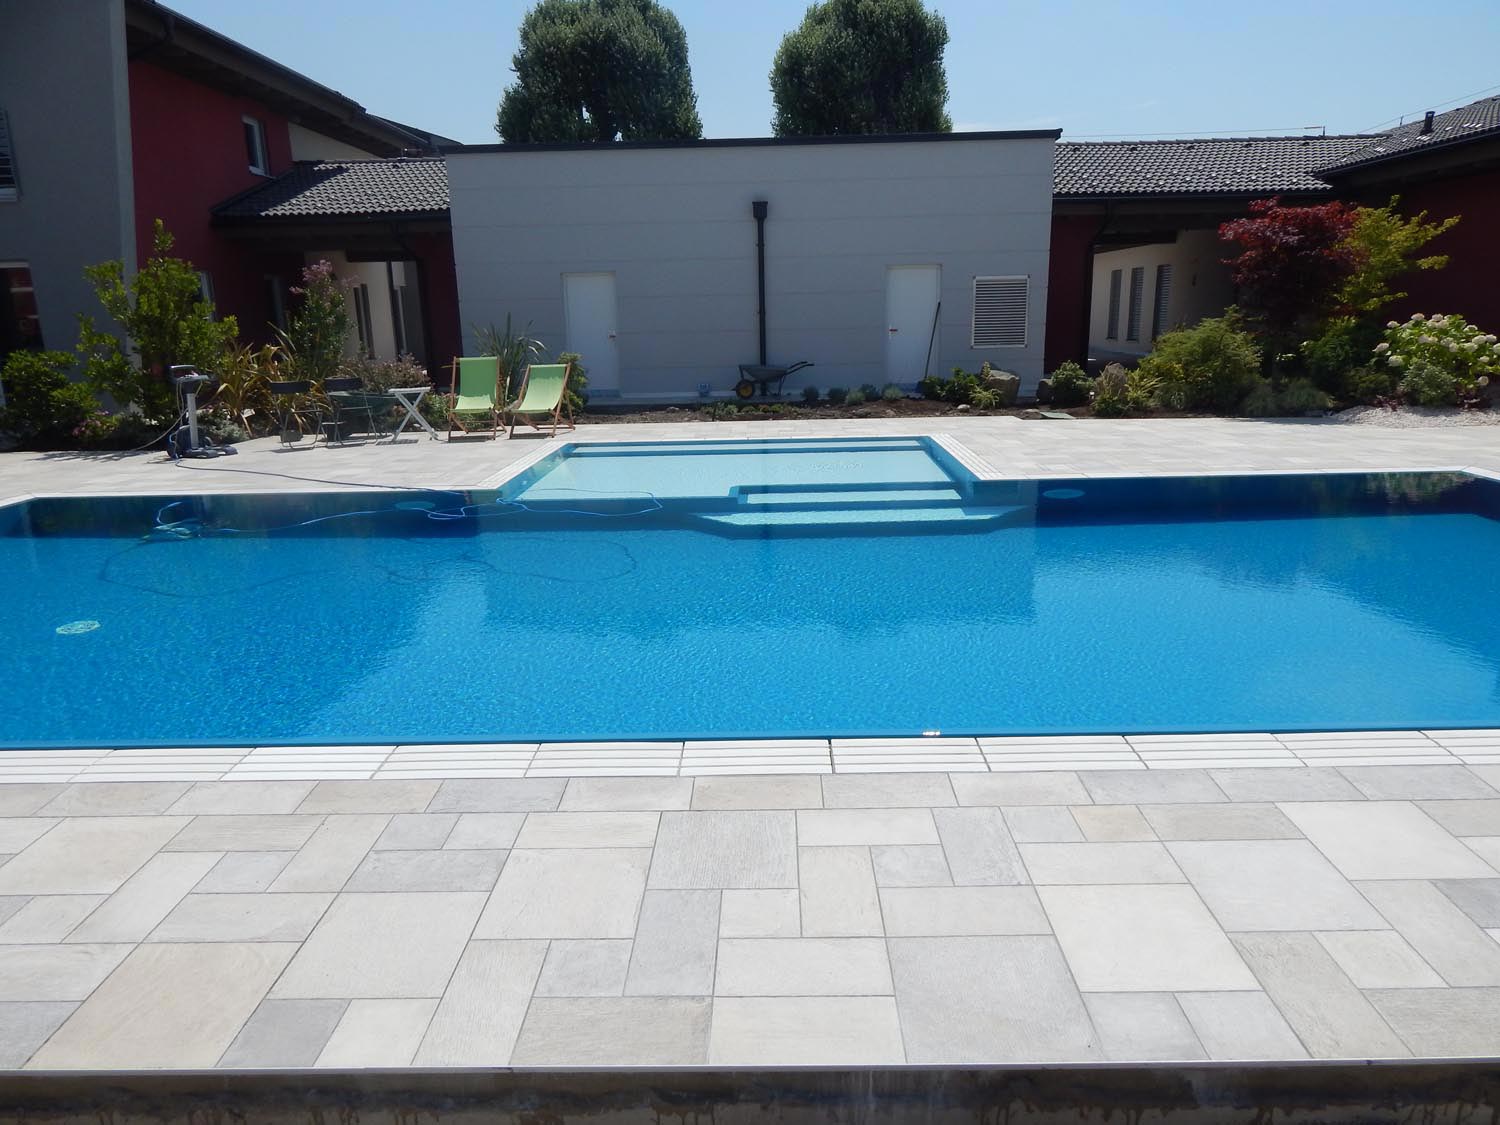 Panoramica di una piscina a sfioro senza vasca di compensazione blu perfetta per il nuoto. Piscina con bagnasciuga centrale perfetto per il riposo.